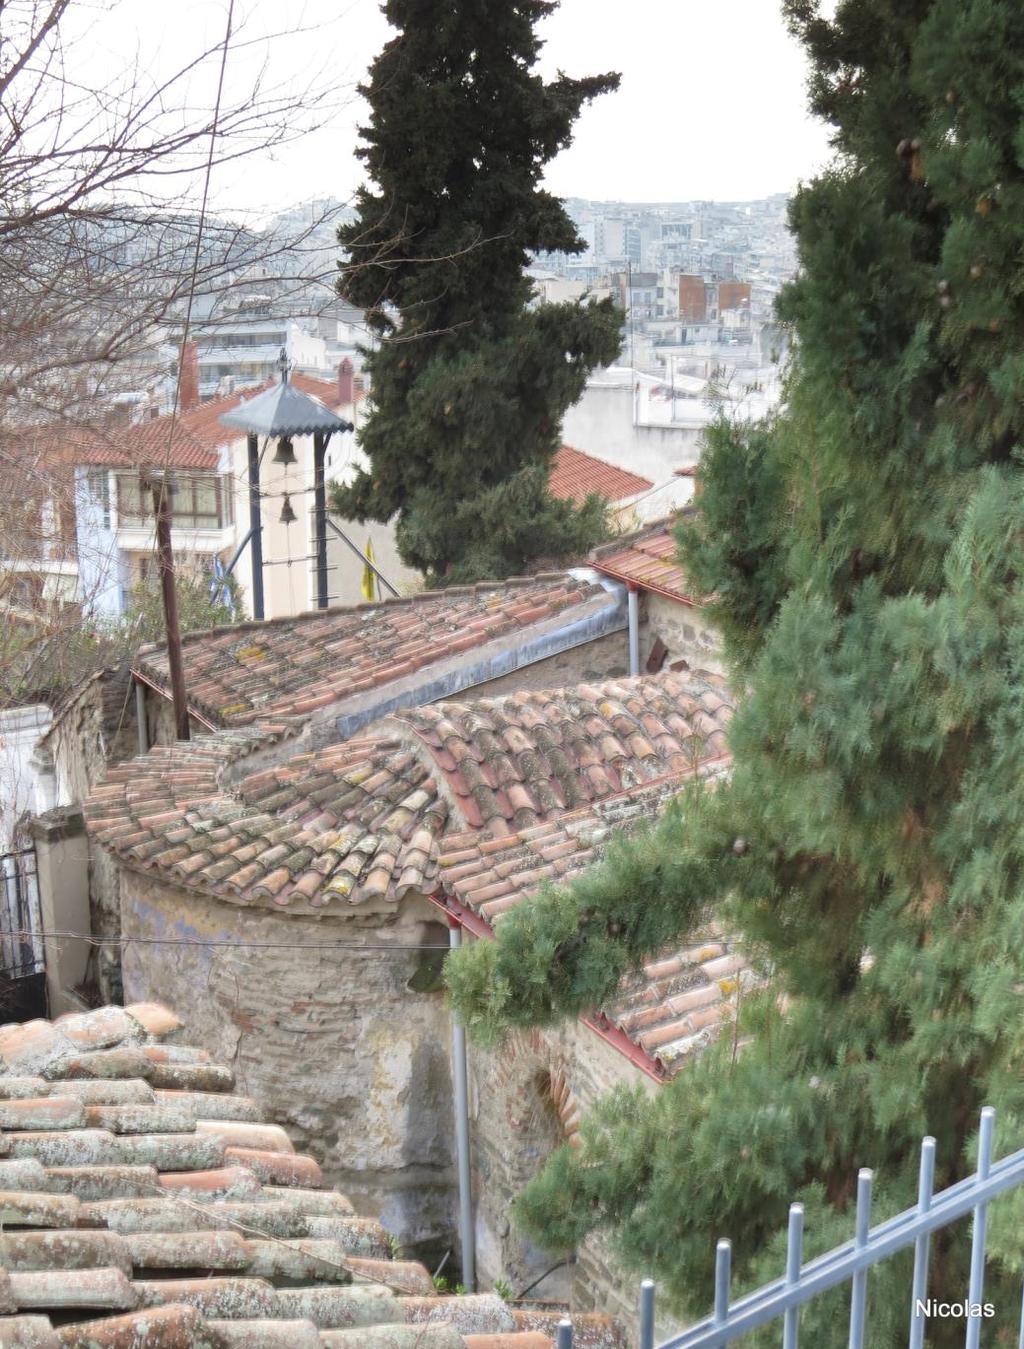 Η Μονή Λατόμου (Οσίου Δαυίδ) Η παλιά και ιστορική μονή Λατόμου σήμερα, είναι ο ενοριακός ναός του Οσίου Δαυίδ του εν Θεσσαλονίκη. Βρίσκεται στην Άνω Πόλη της Θεσσαλονίκης.